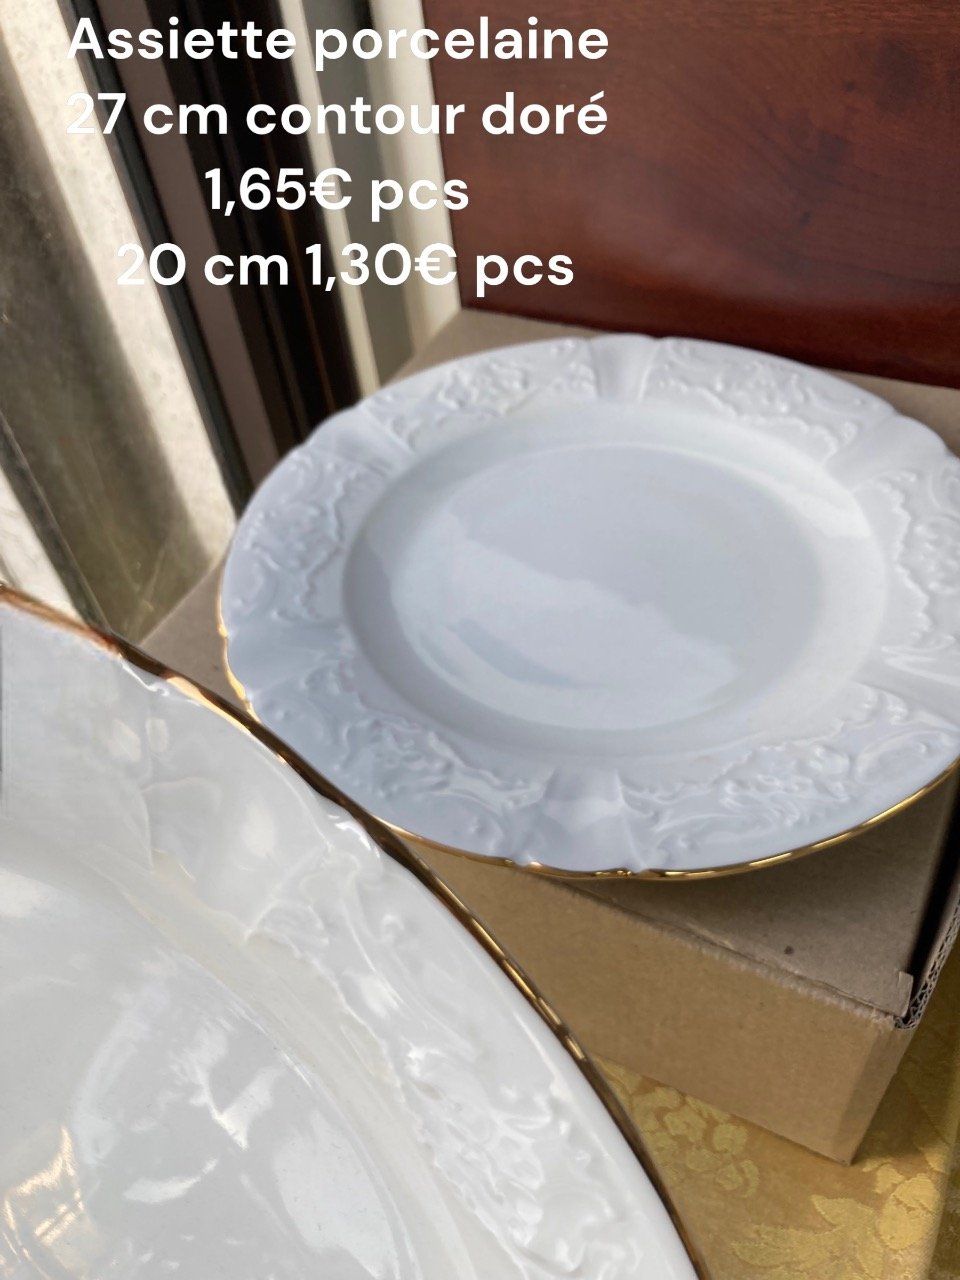 Assiette porcelaine contour doré 27 cm